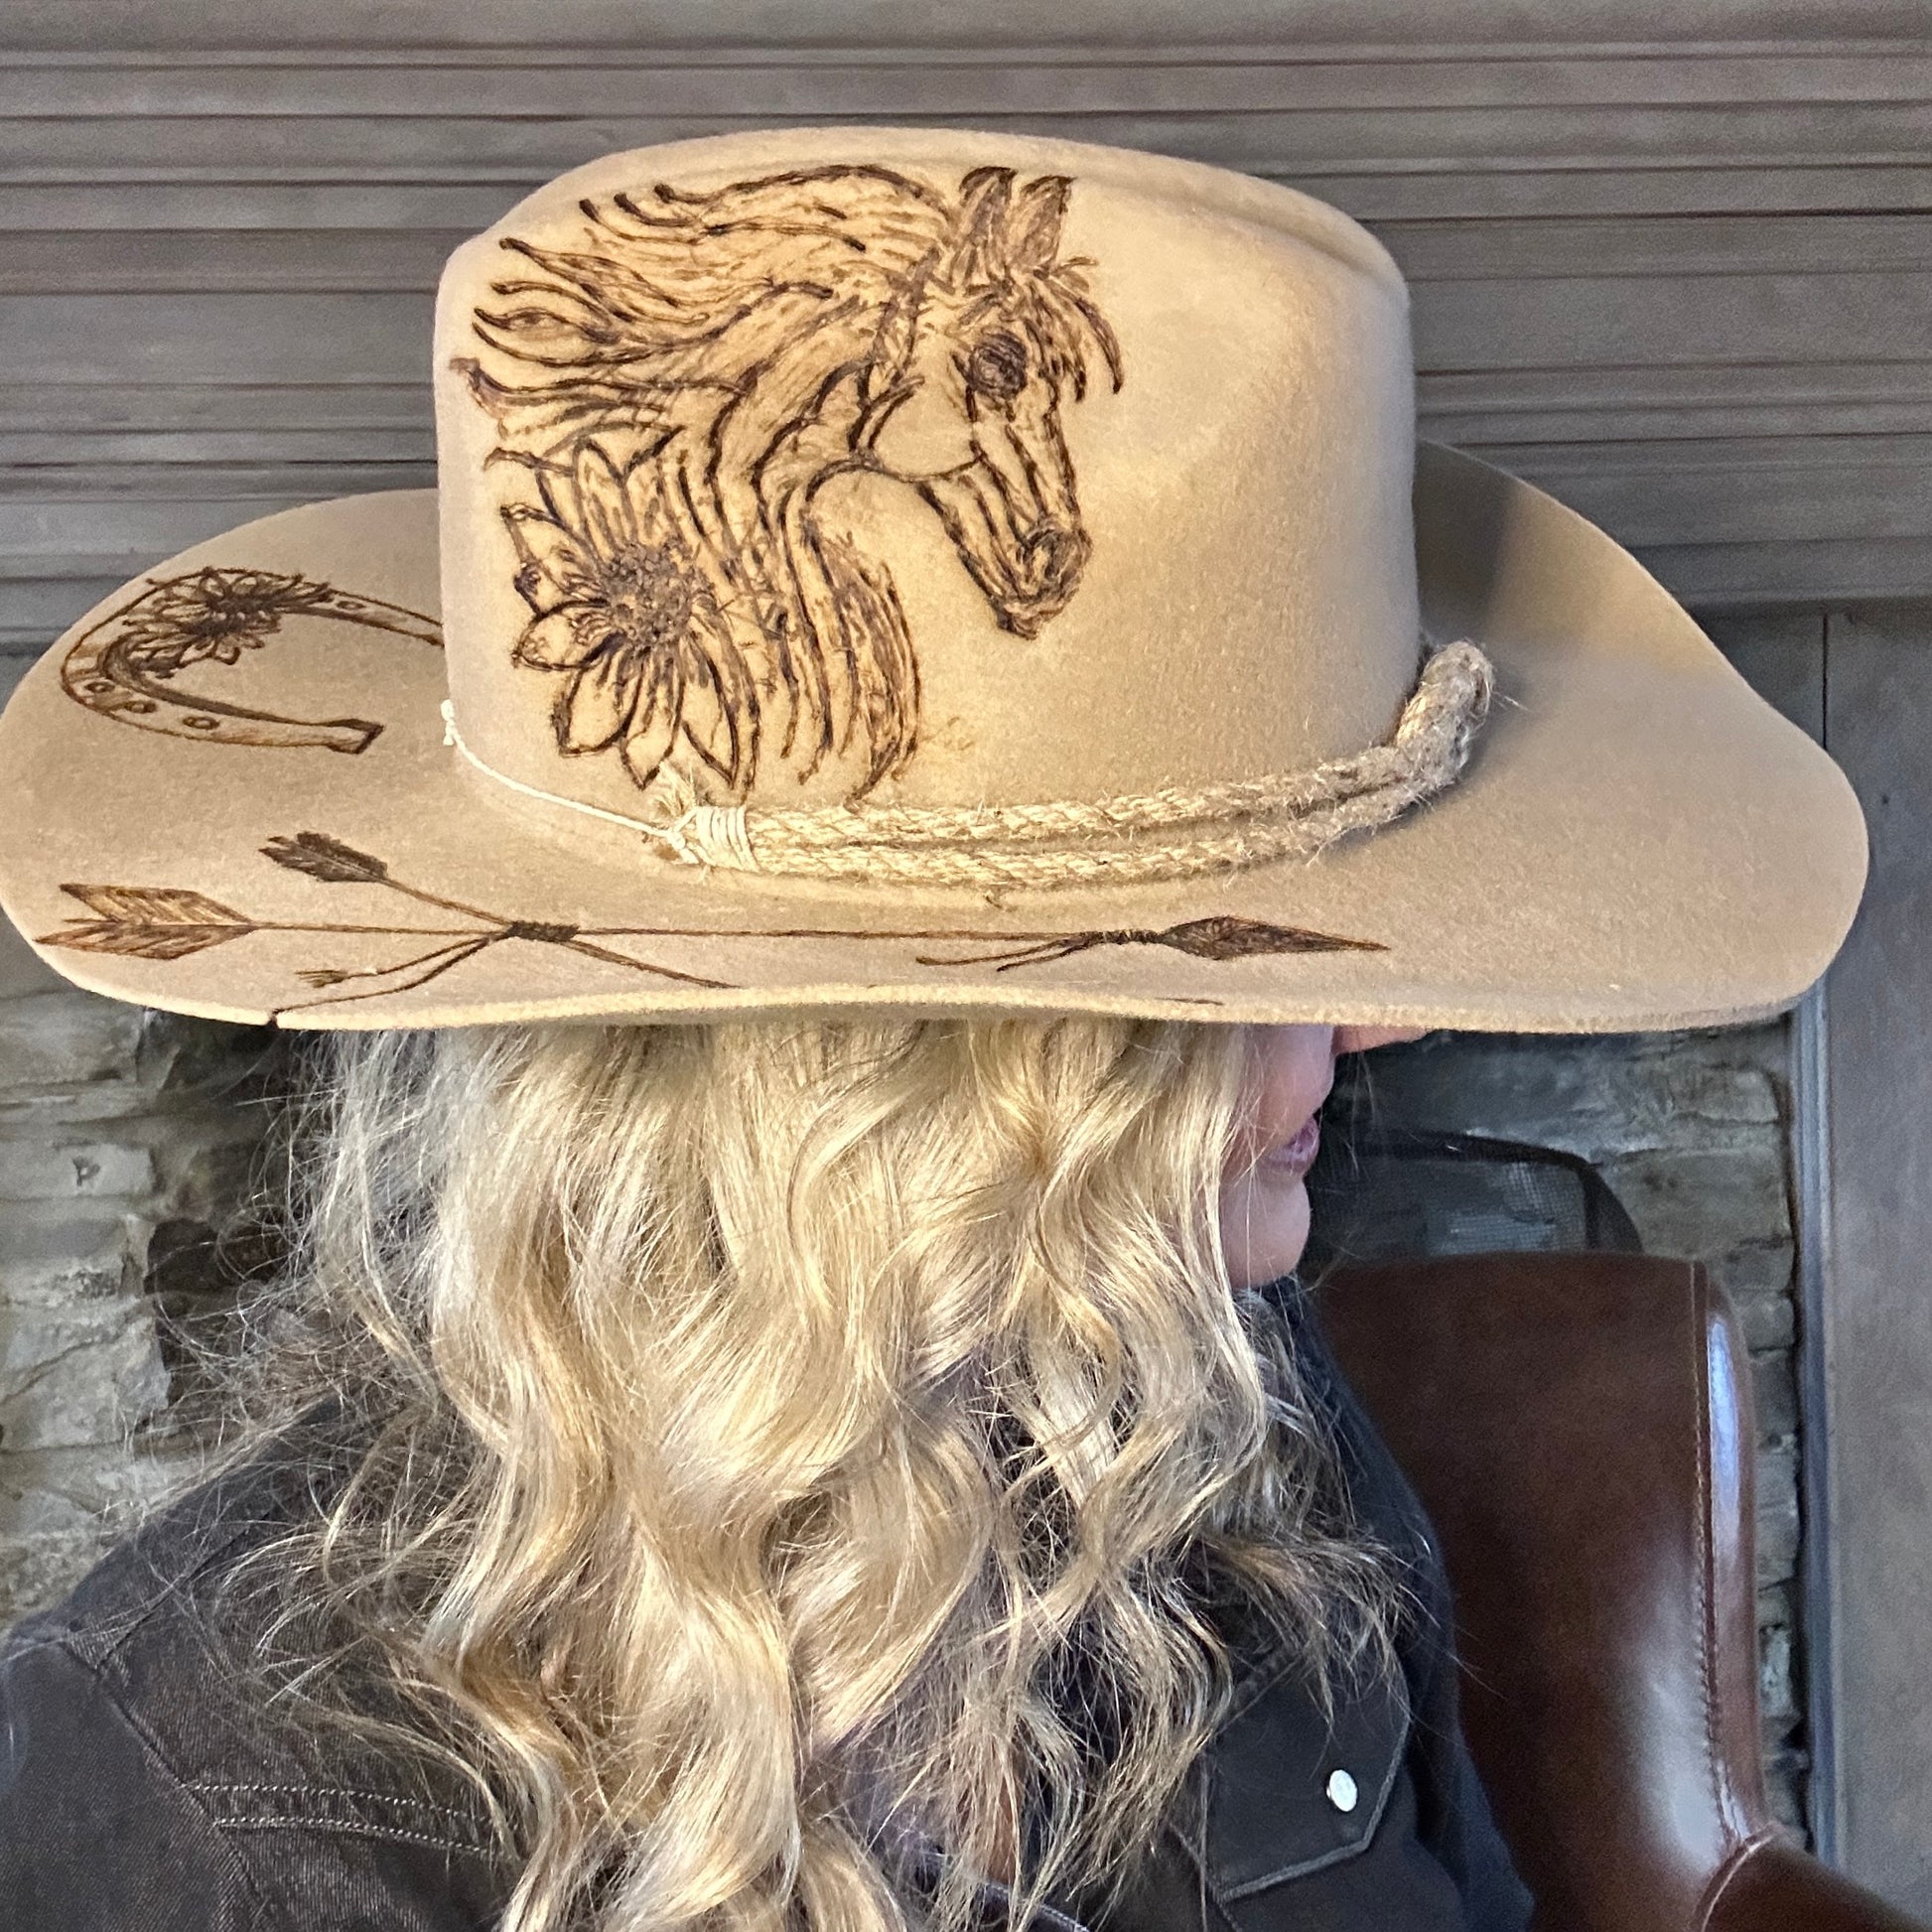 Lainey Wilson Cowboy Hat - Shop on Pinterest